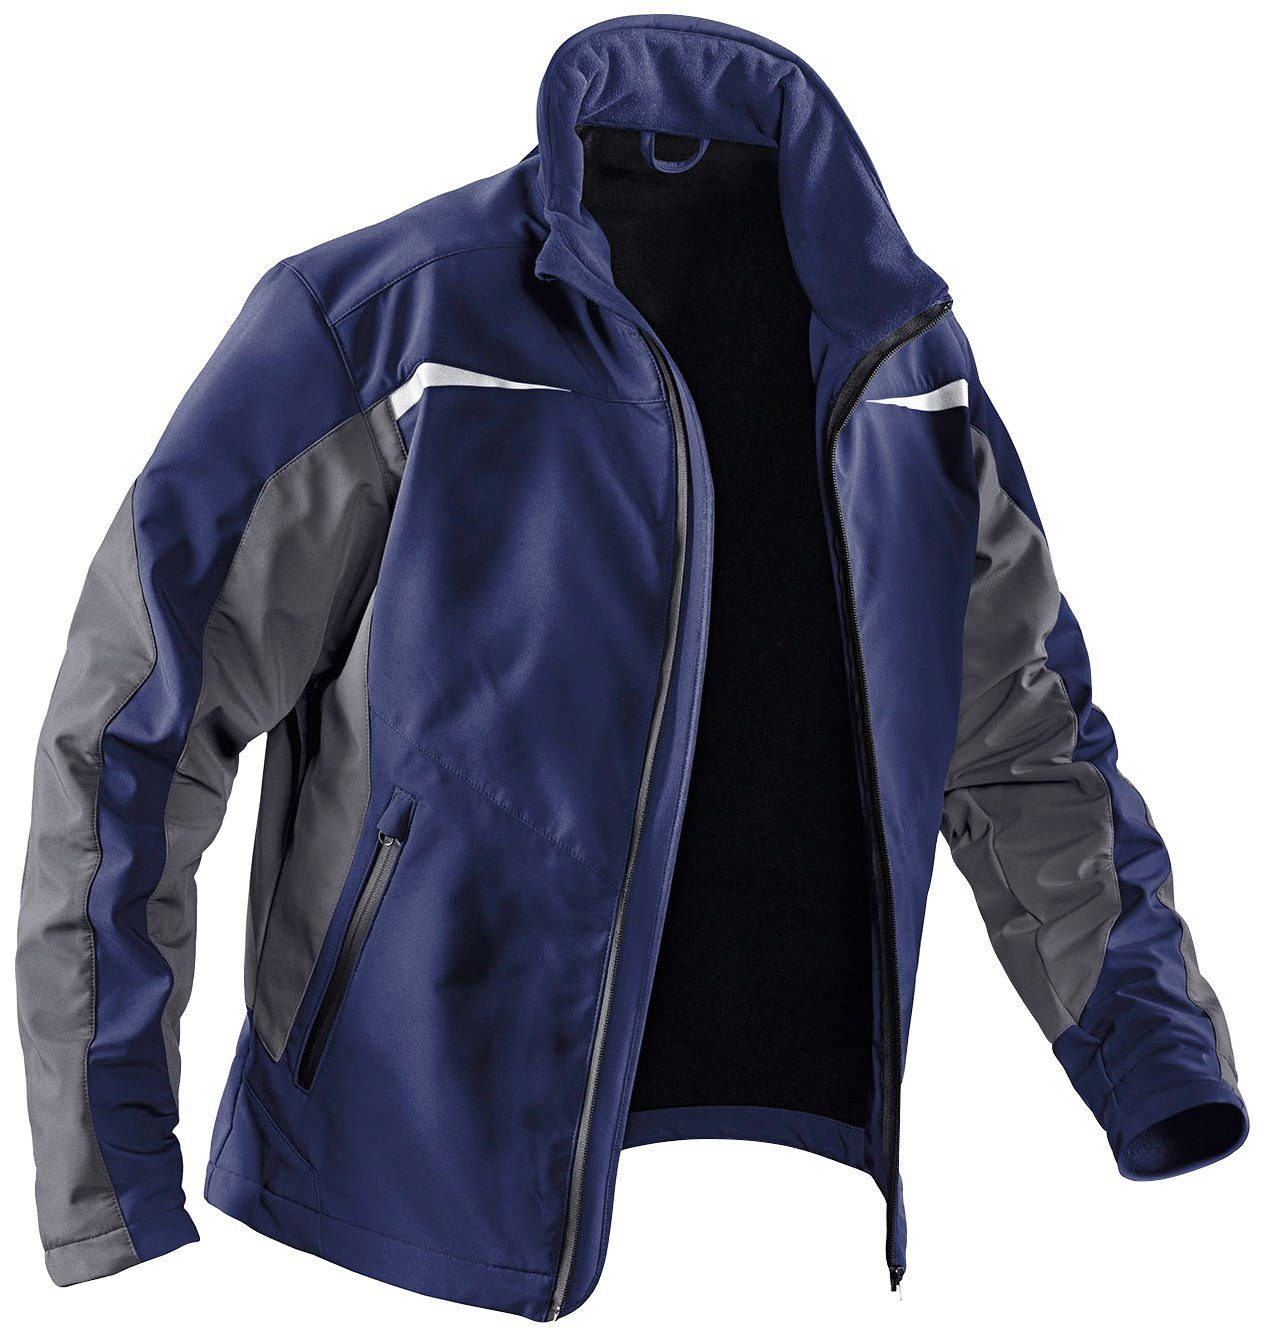 Kübler Arbeitsjacke Softshell Jacke mit dunkelblau-anthrazit wasserabweisend Taschen, winddicht, 4